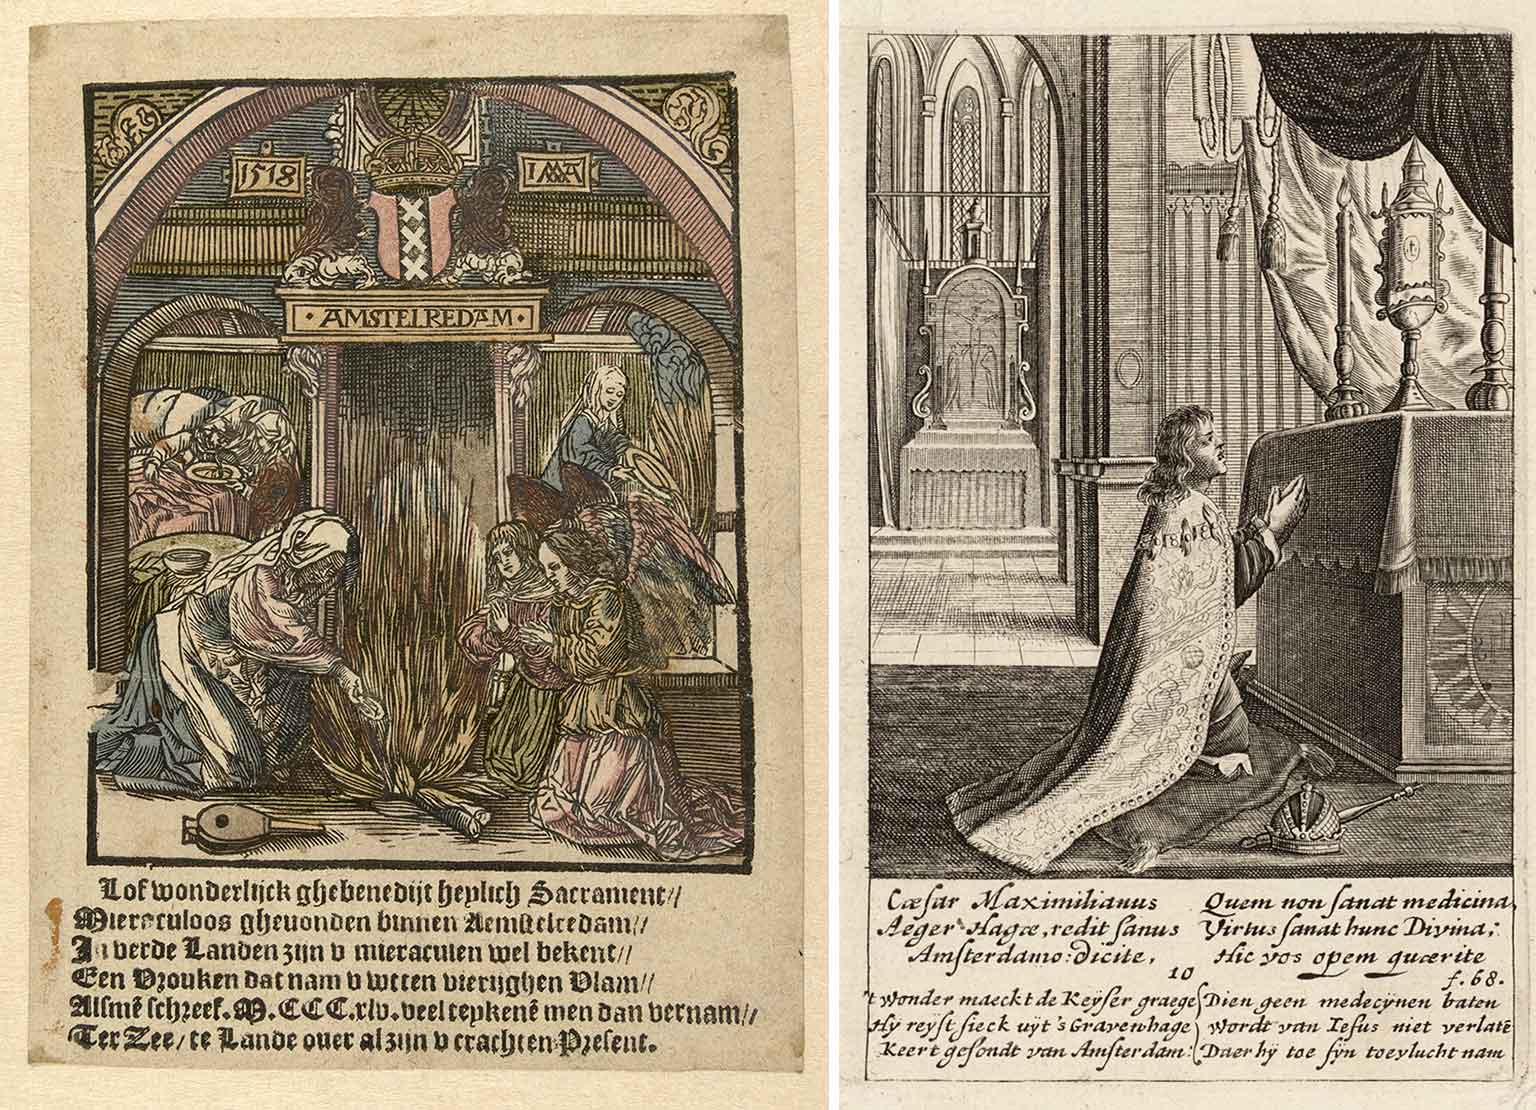 Bidprentje van het Mirakel van Amsterdam en Keizer Maximilliaan I in 1484 in de Heilige Stede, Amsterdam